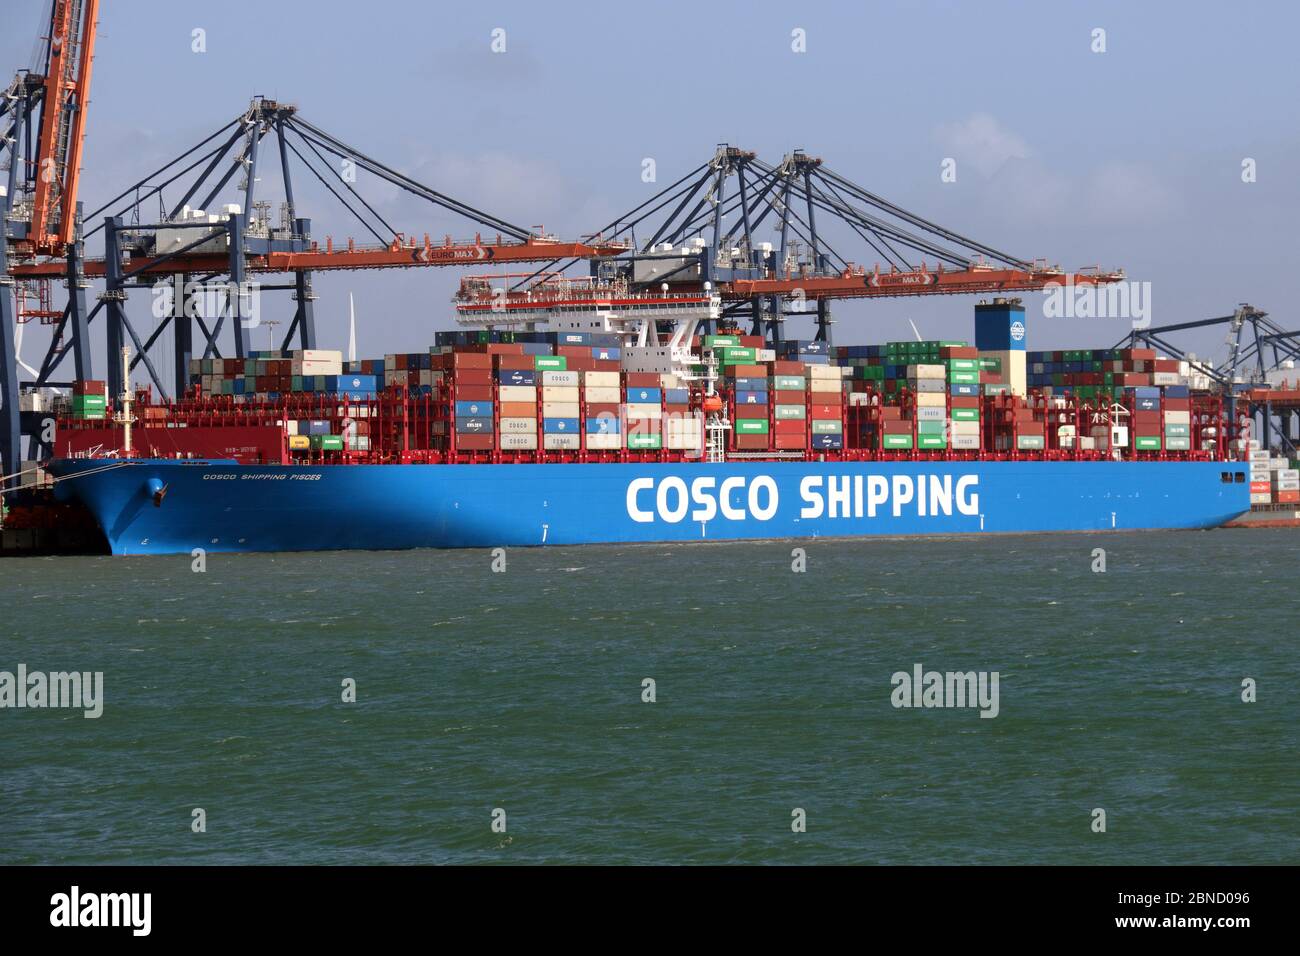 El buque contenedor Cosco Shipping Piscis se cargará el 12 de marzo de 2020 en el puerto de Rotterdam. Foto de stock